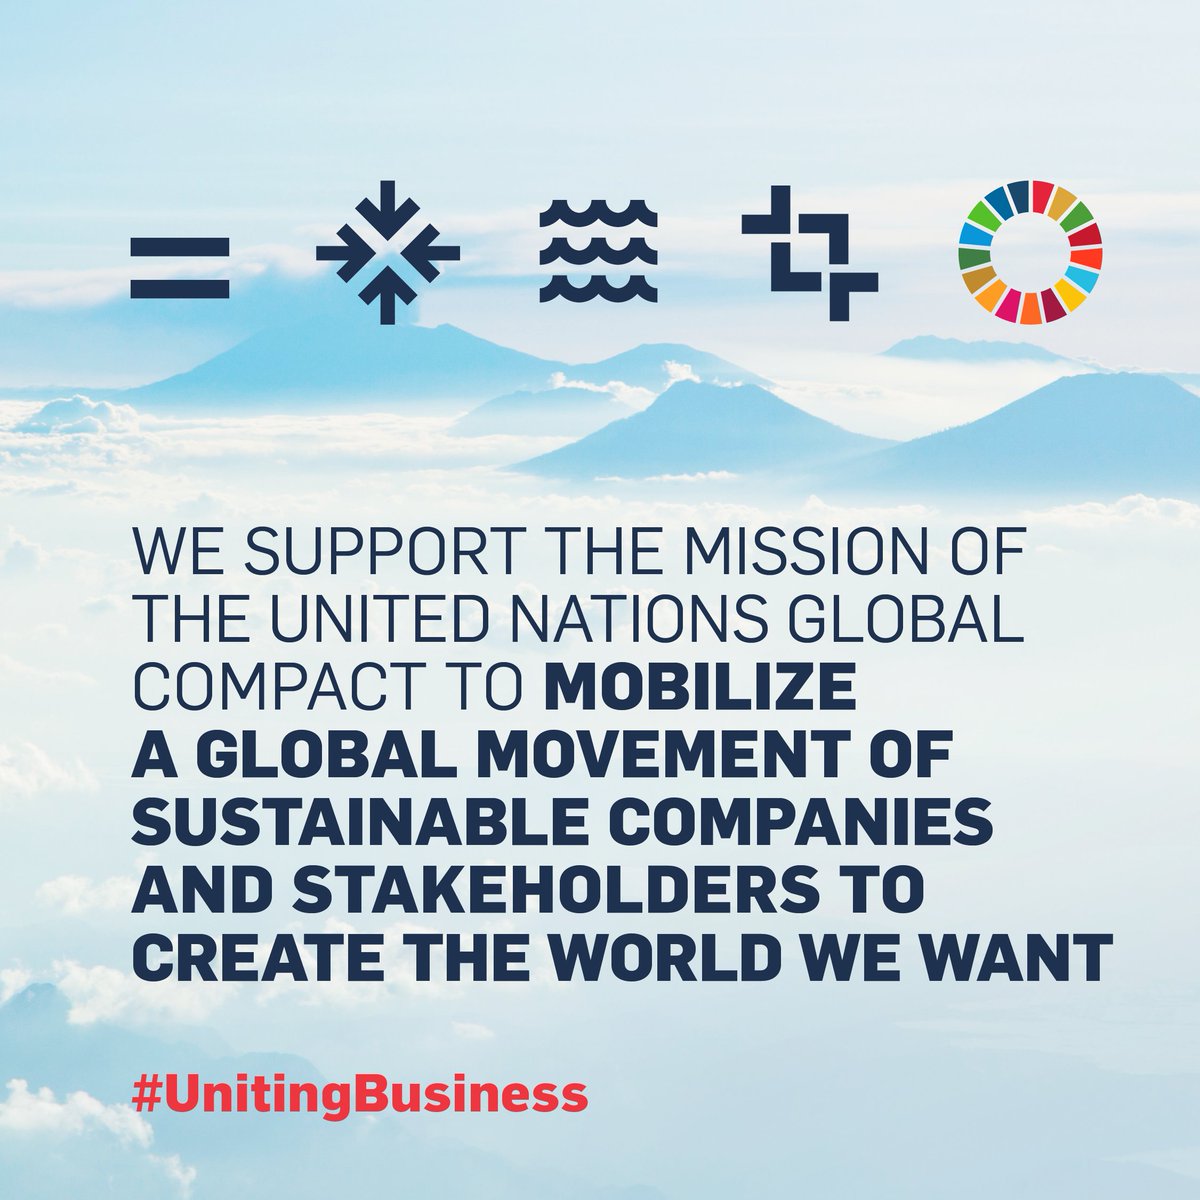 この度トッズグループが世界最大のサステナビリティ イニシアチブ @globalcompactに参加したことをご報告いたします。
また、責任ある持続可能な経営に対するコミットメントをさらに明確にしたことを誇りに思うとともに、ビジネスプロセスへの取り組みを強化することを誓います。#UnitingBusiness